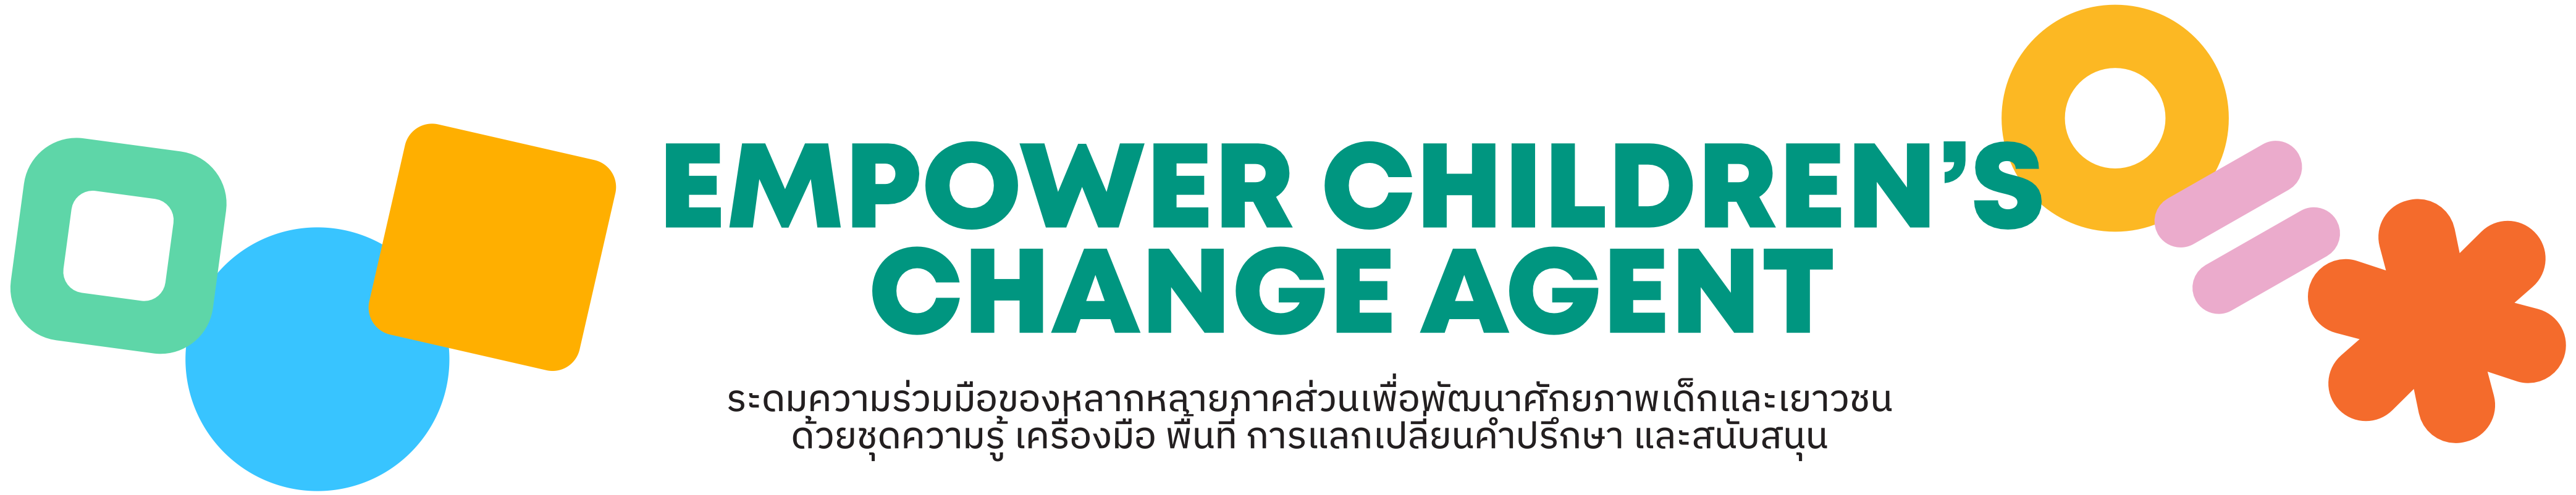 Empower children's change agents